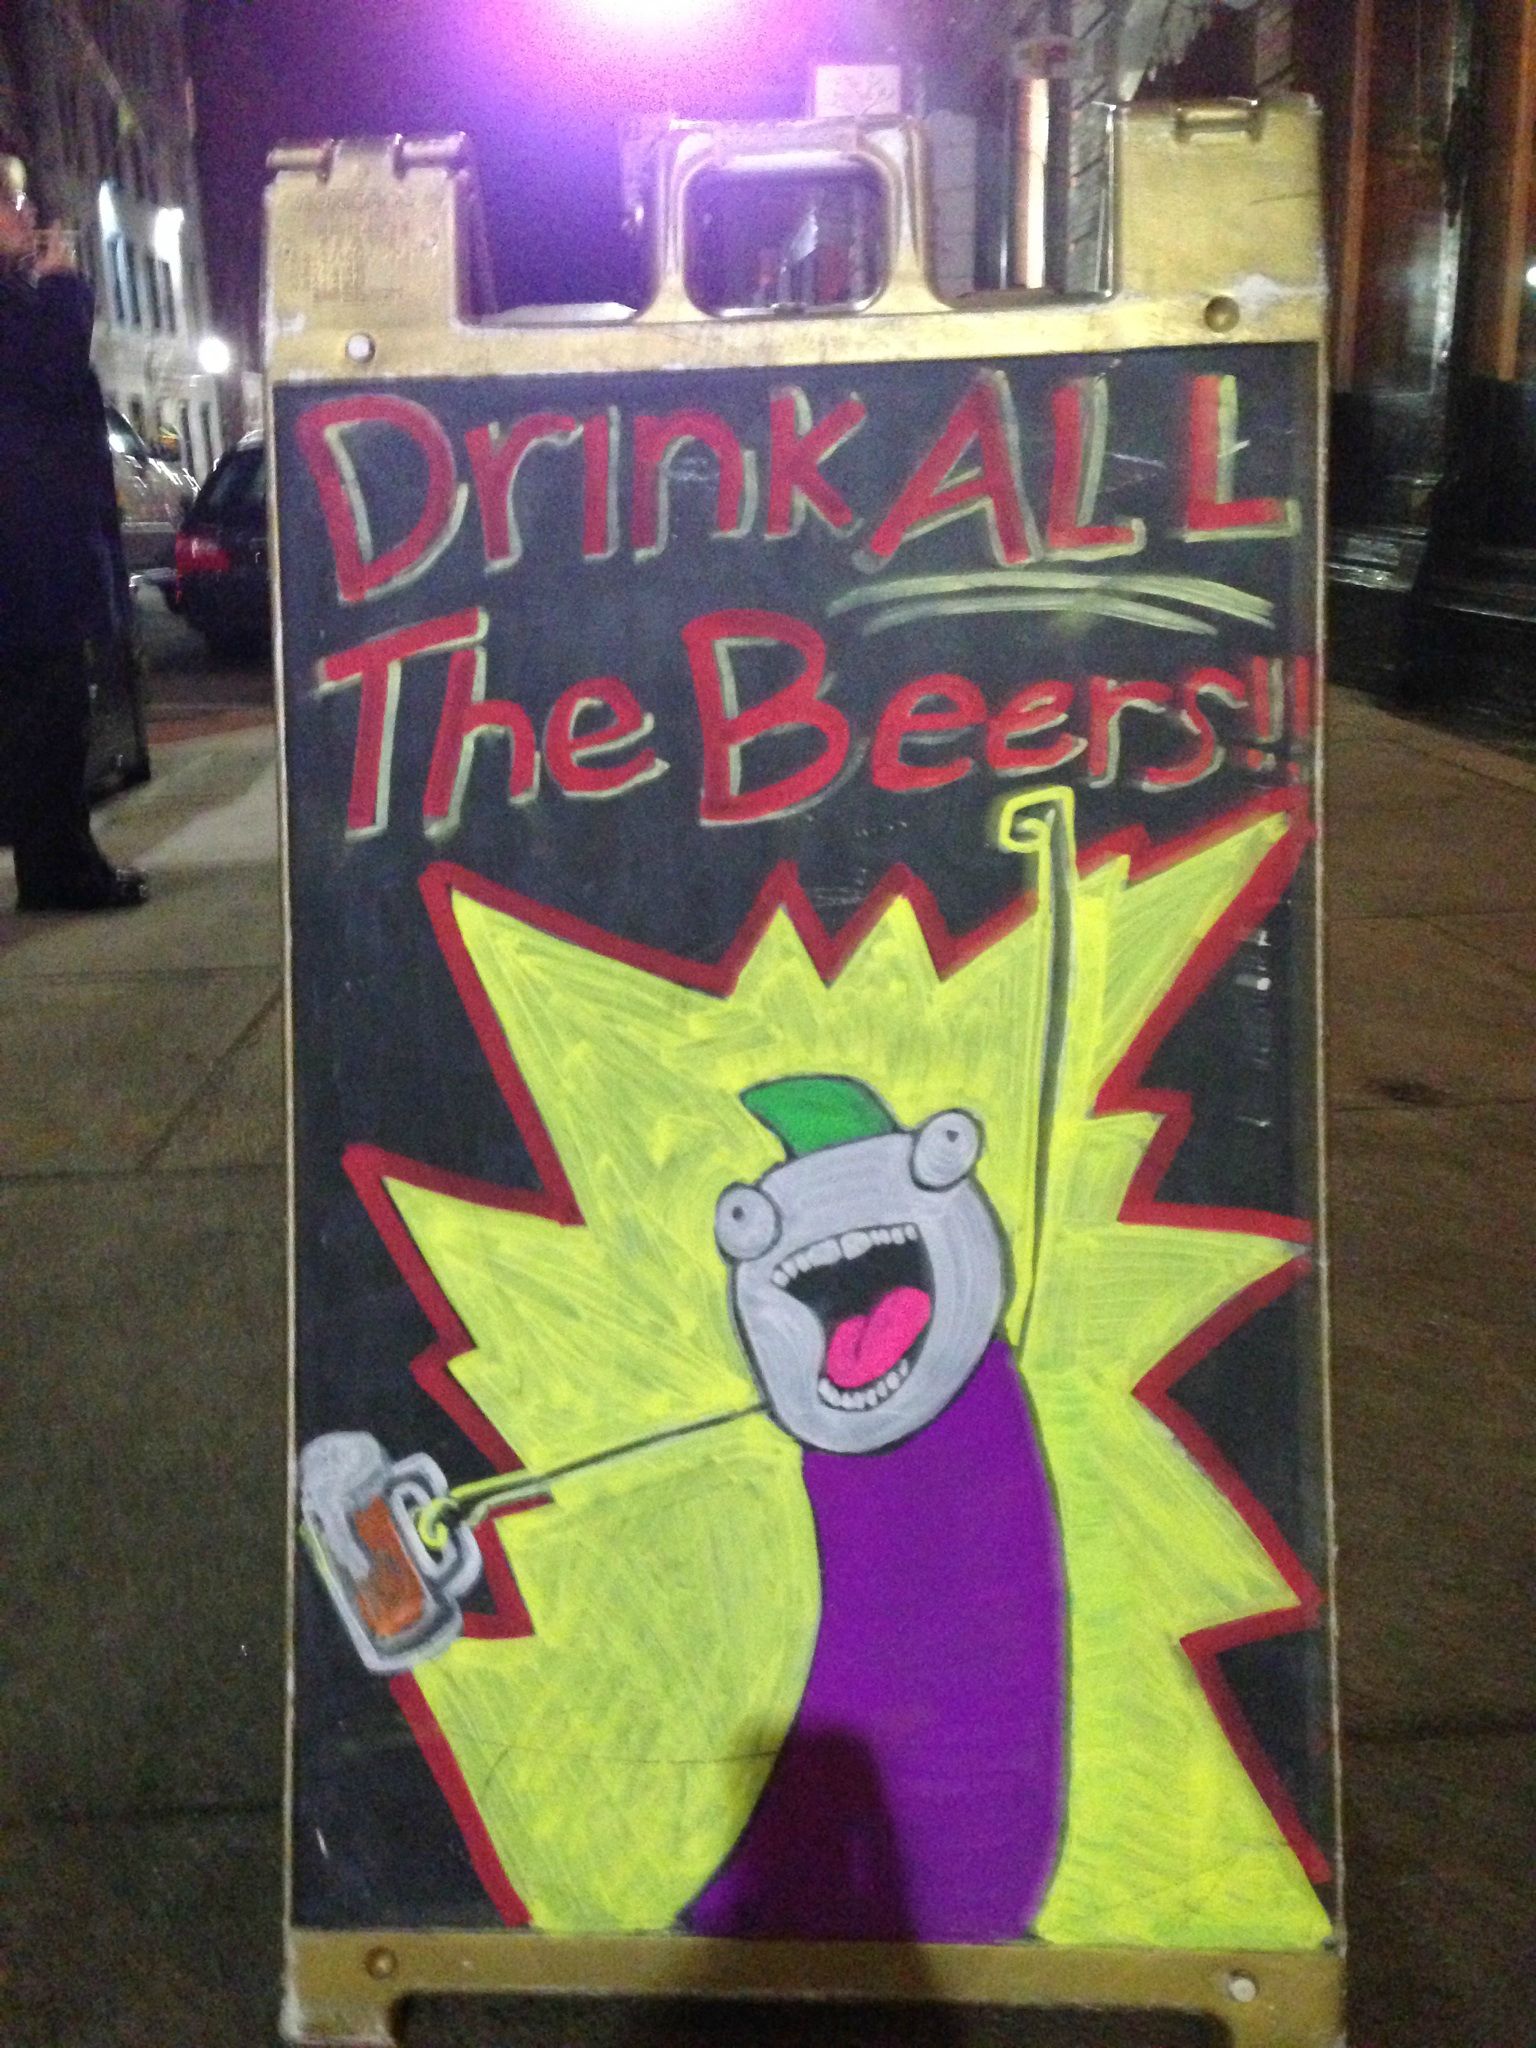 Bar - Deiak All The Beers